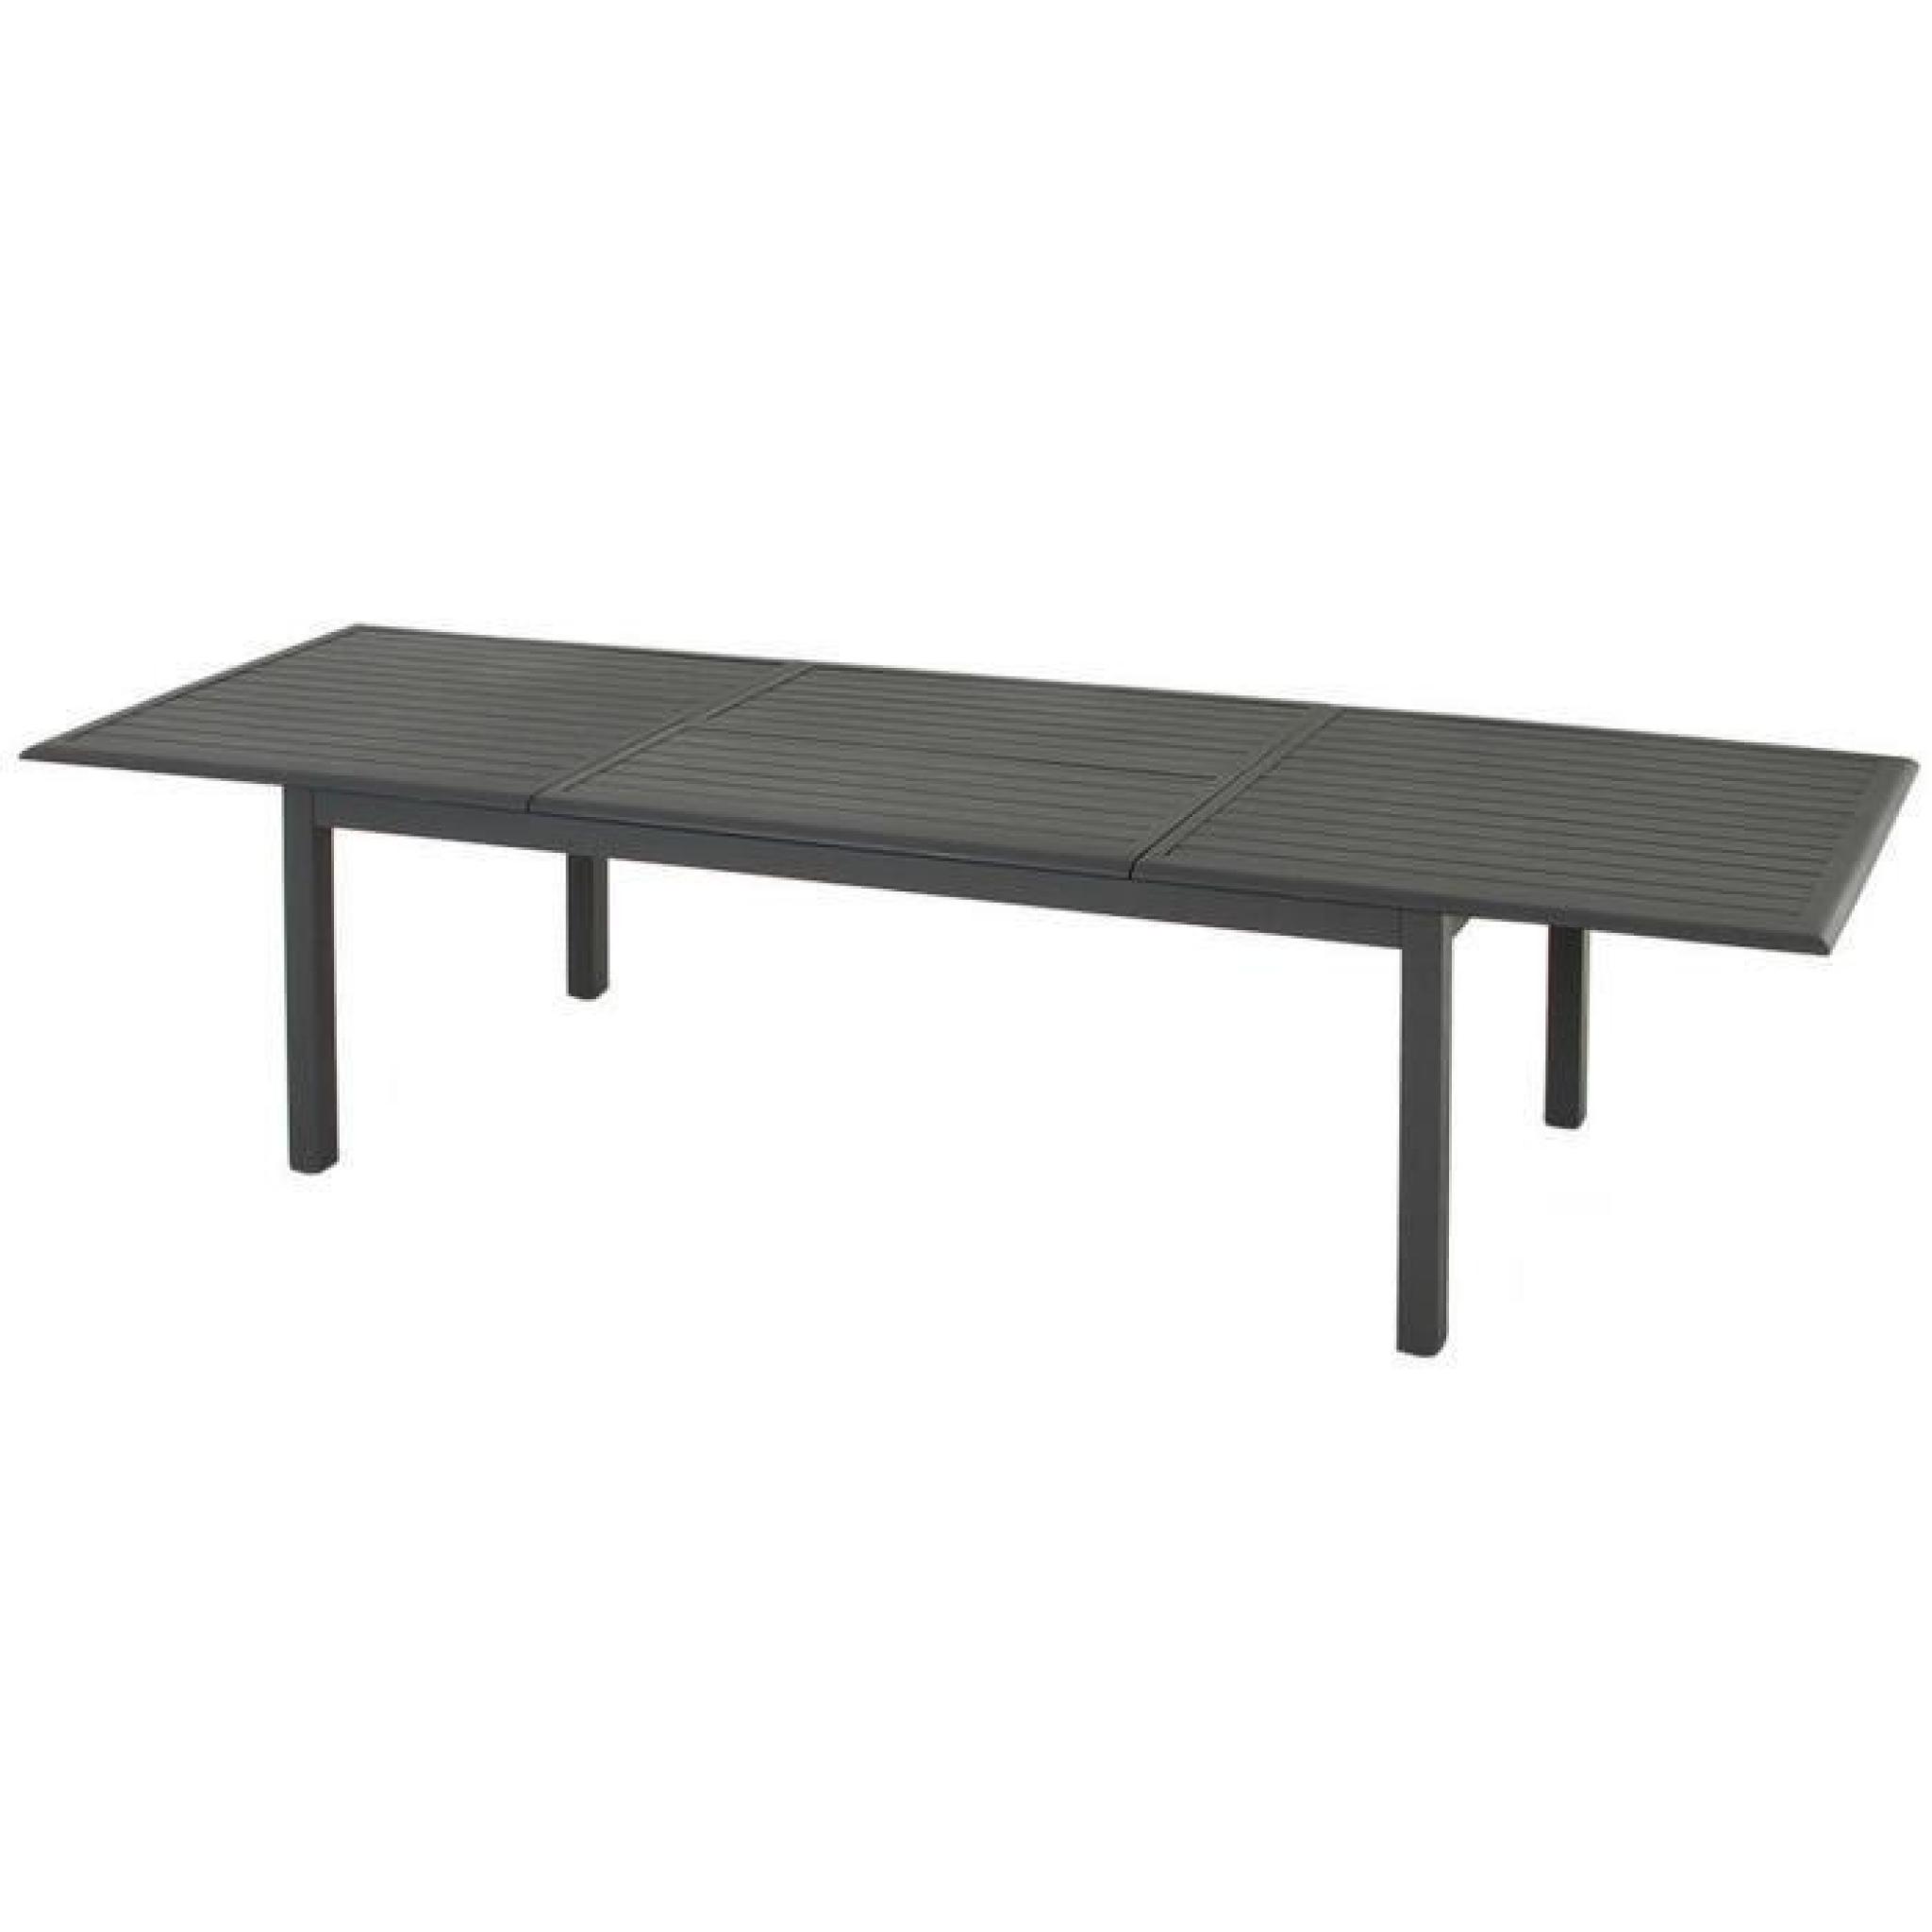 Table extensible en aluminium de couleur ardoise - Dim : L 200/300 x P 100 x H 75 cm  